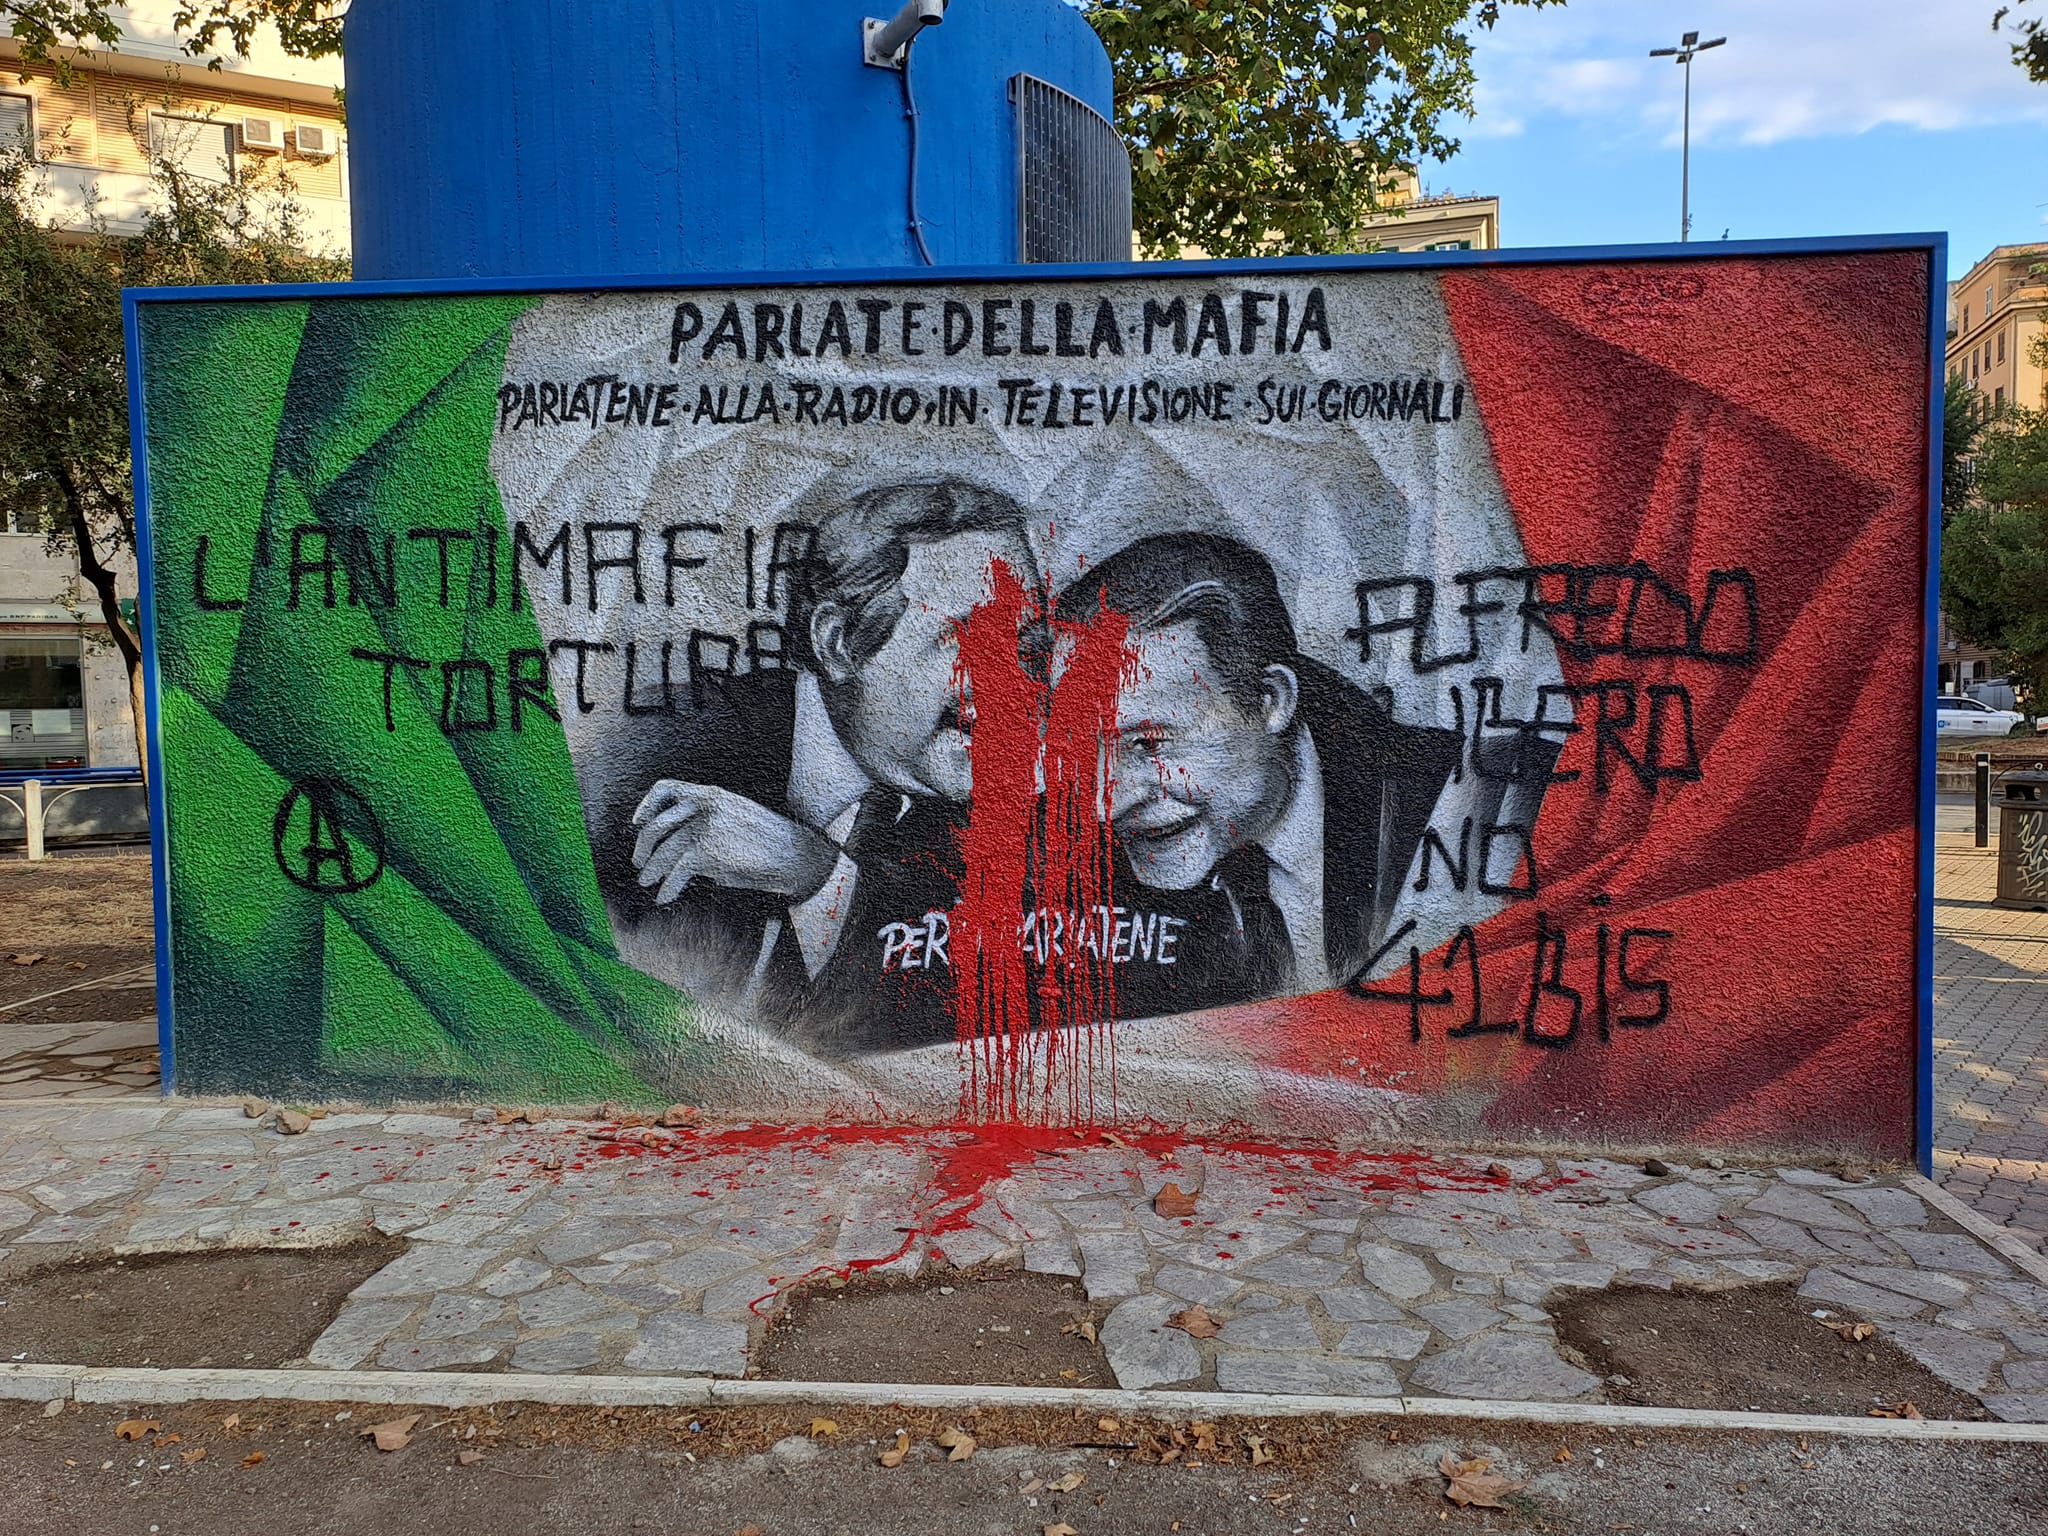 Murale Falcone e Borsellino vandalizzato a piazza Bologna